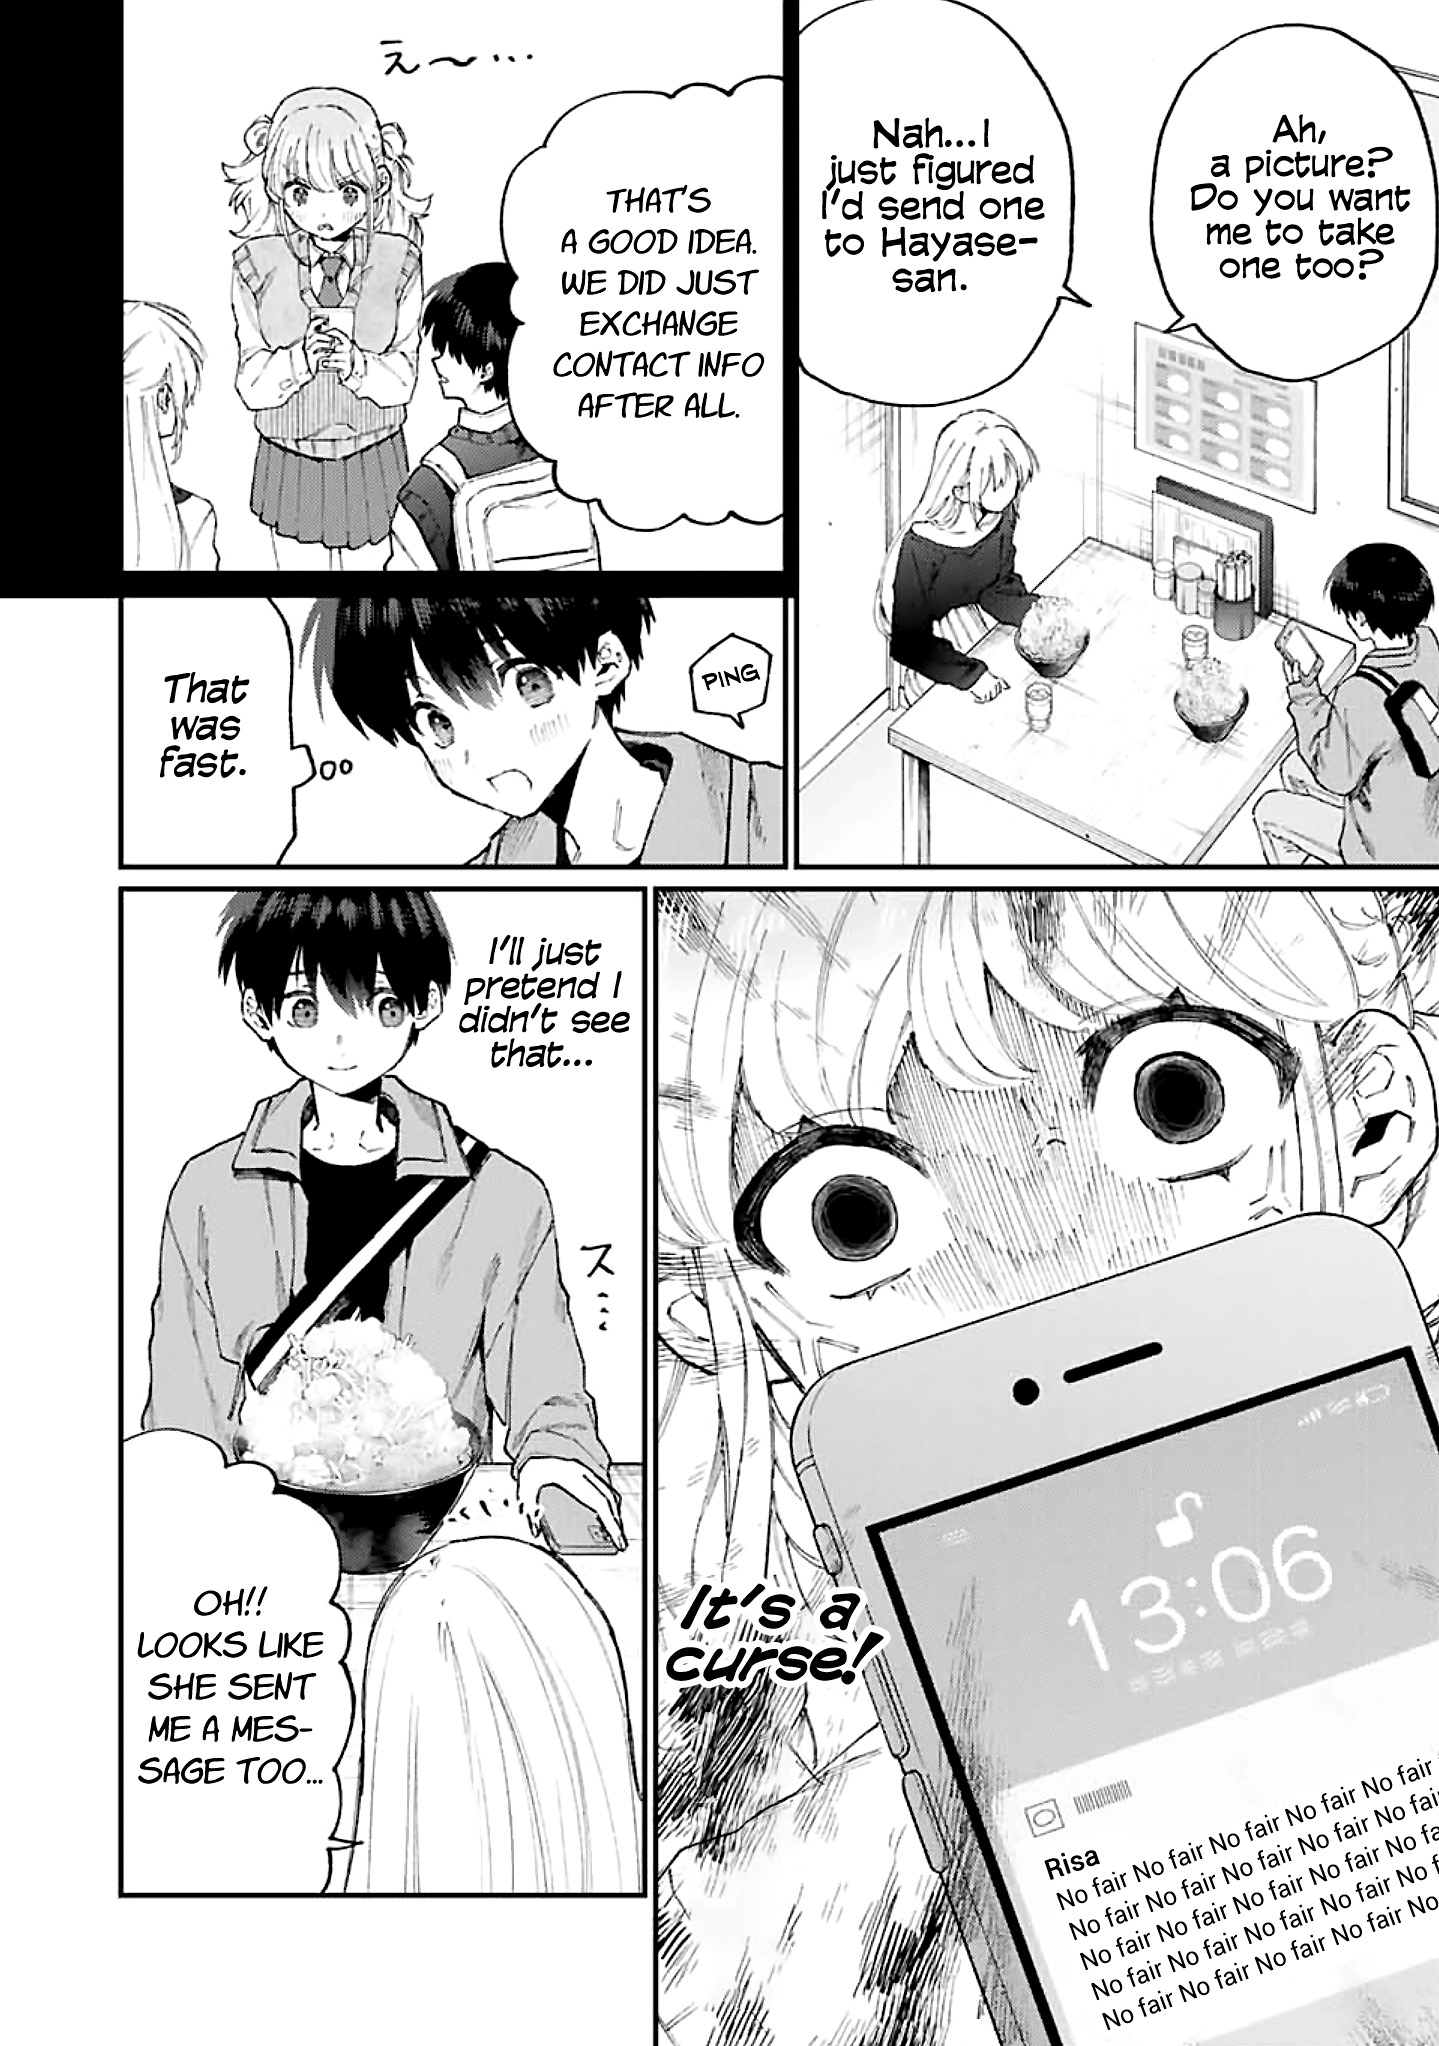 Shikimori’s not just a cutie Chapter 134